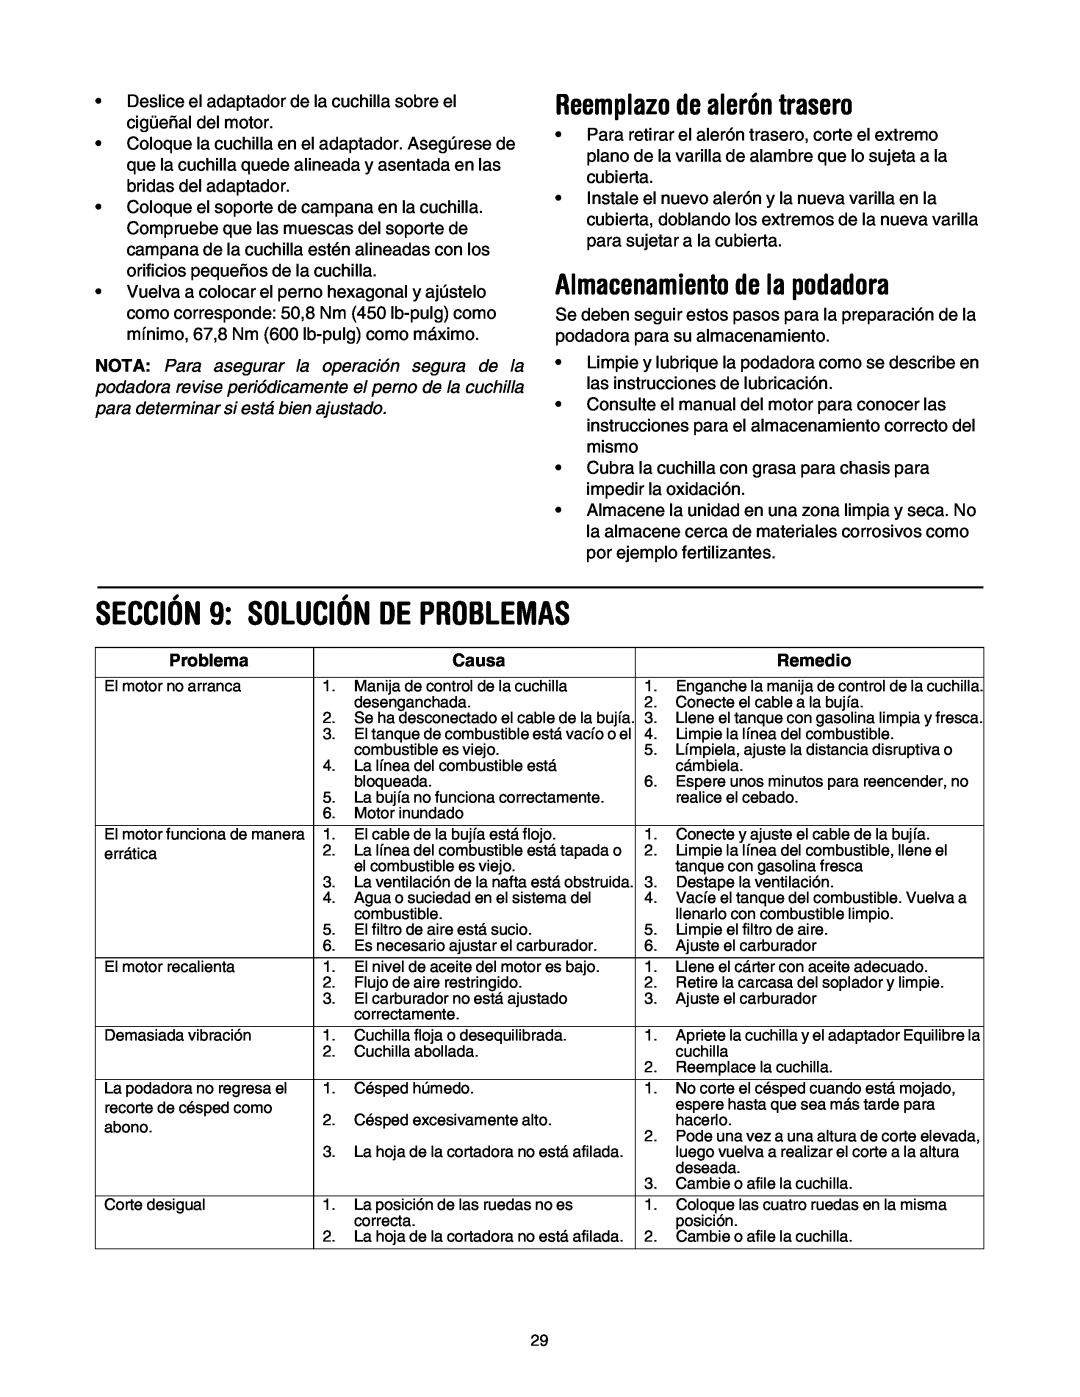 MTD 549 manual SECCIÓN 9 SOLUCIÓN DE PROBLEMAS, Reemplazo de alerón trasero, Almacenamiento de la podadora, Problema, Causa 